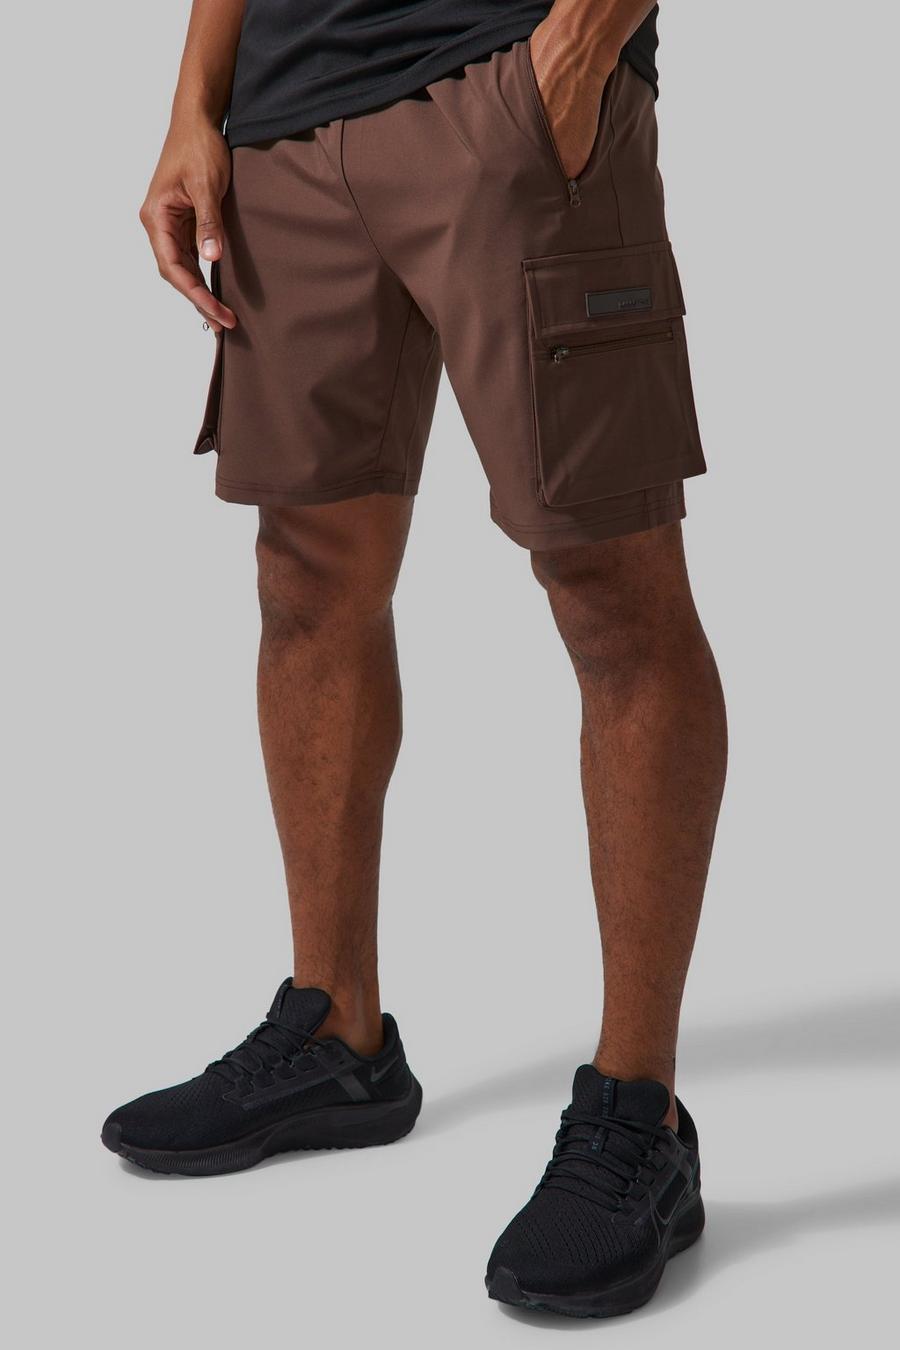 Pantalón corto MAN Active cargo ligero, Chocolate marrone